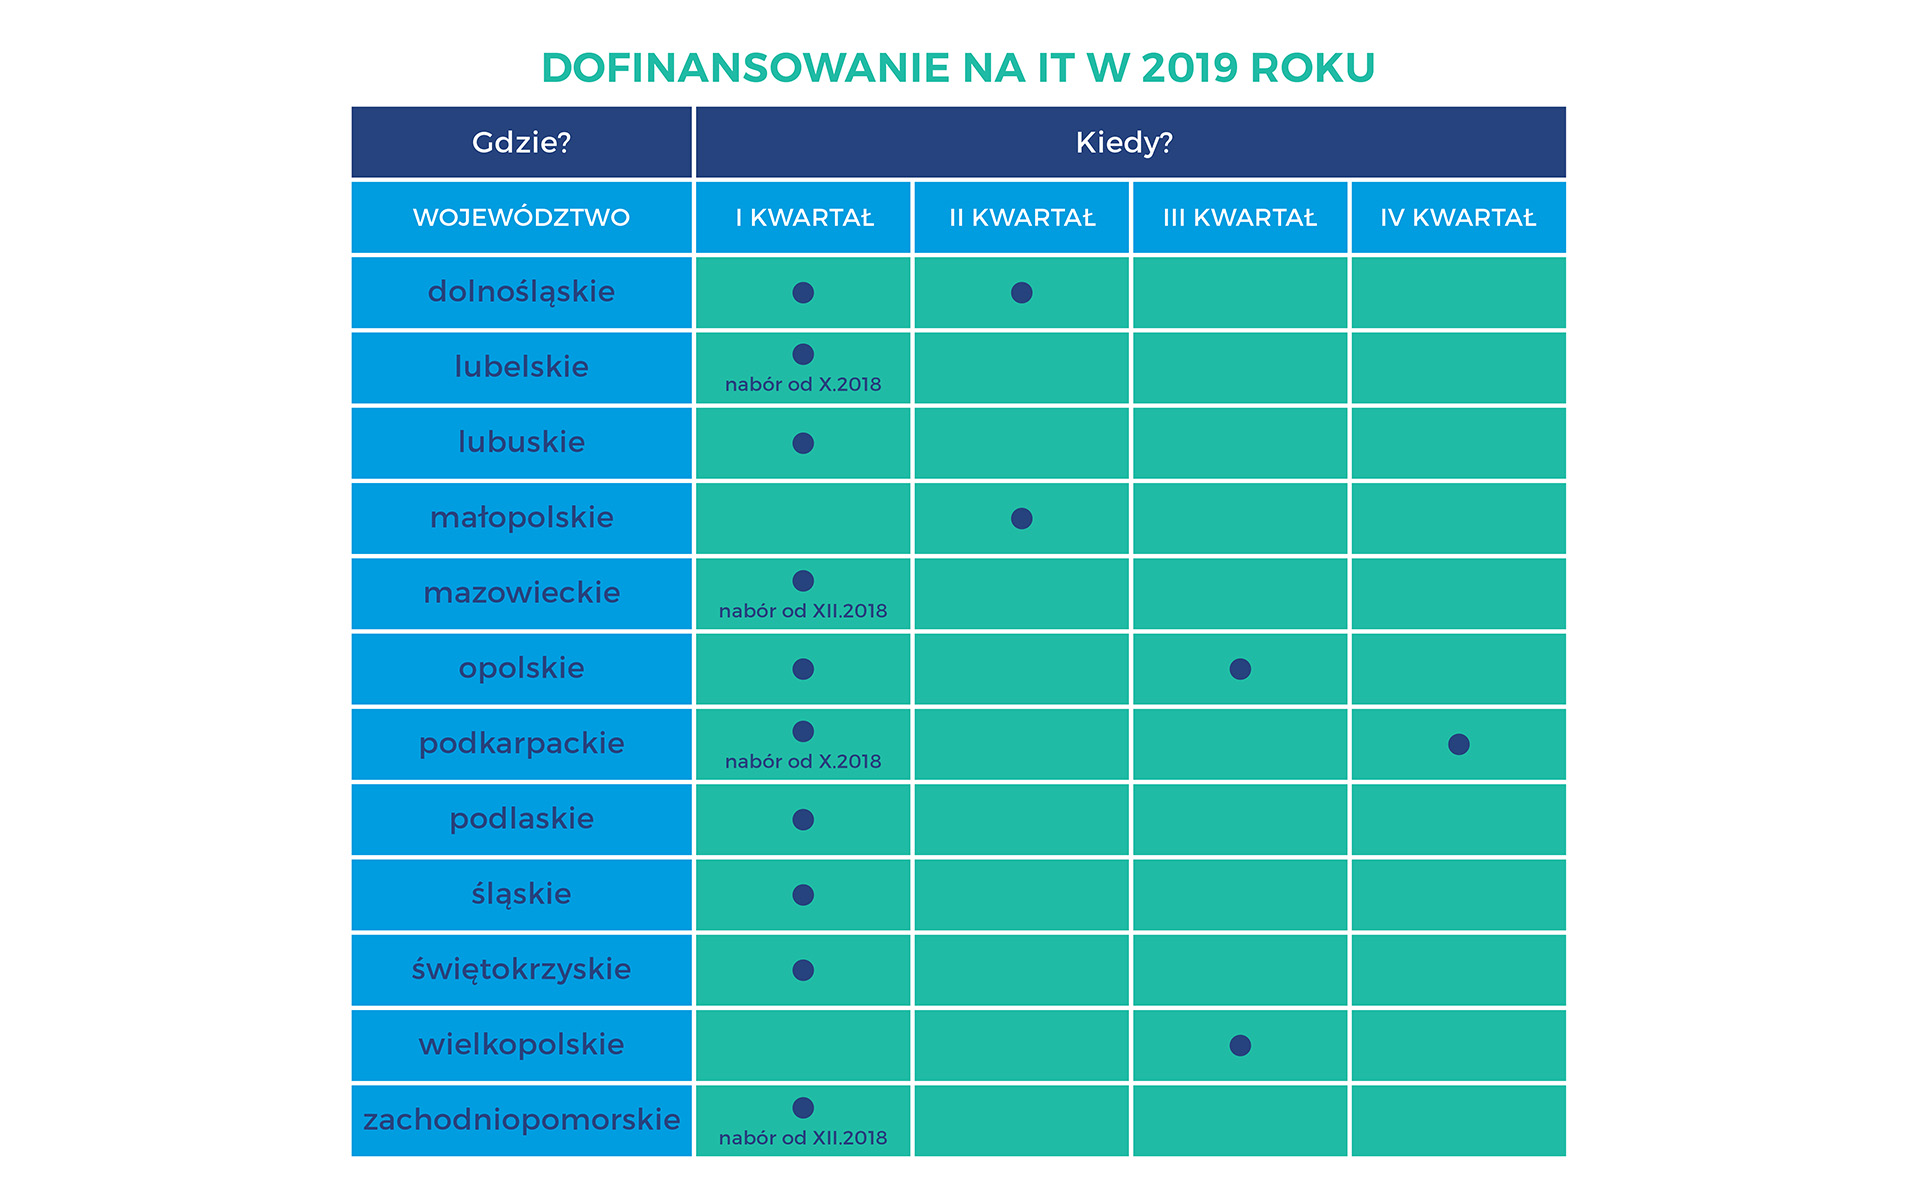 Dofinansowanie unijne na IT w 2019 roku - regiony w Polsce